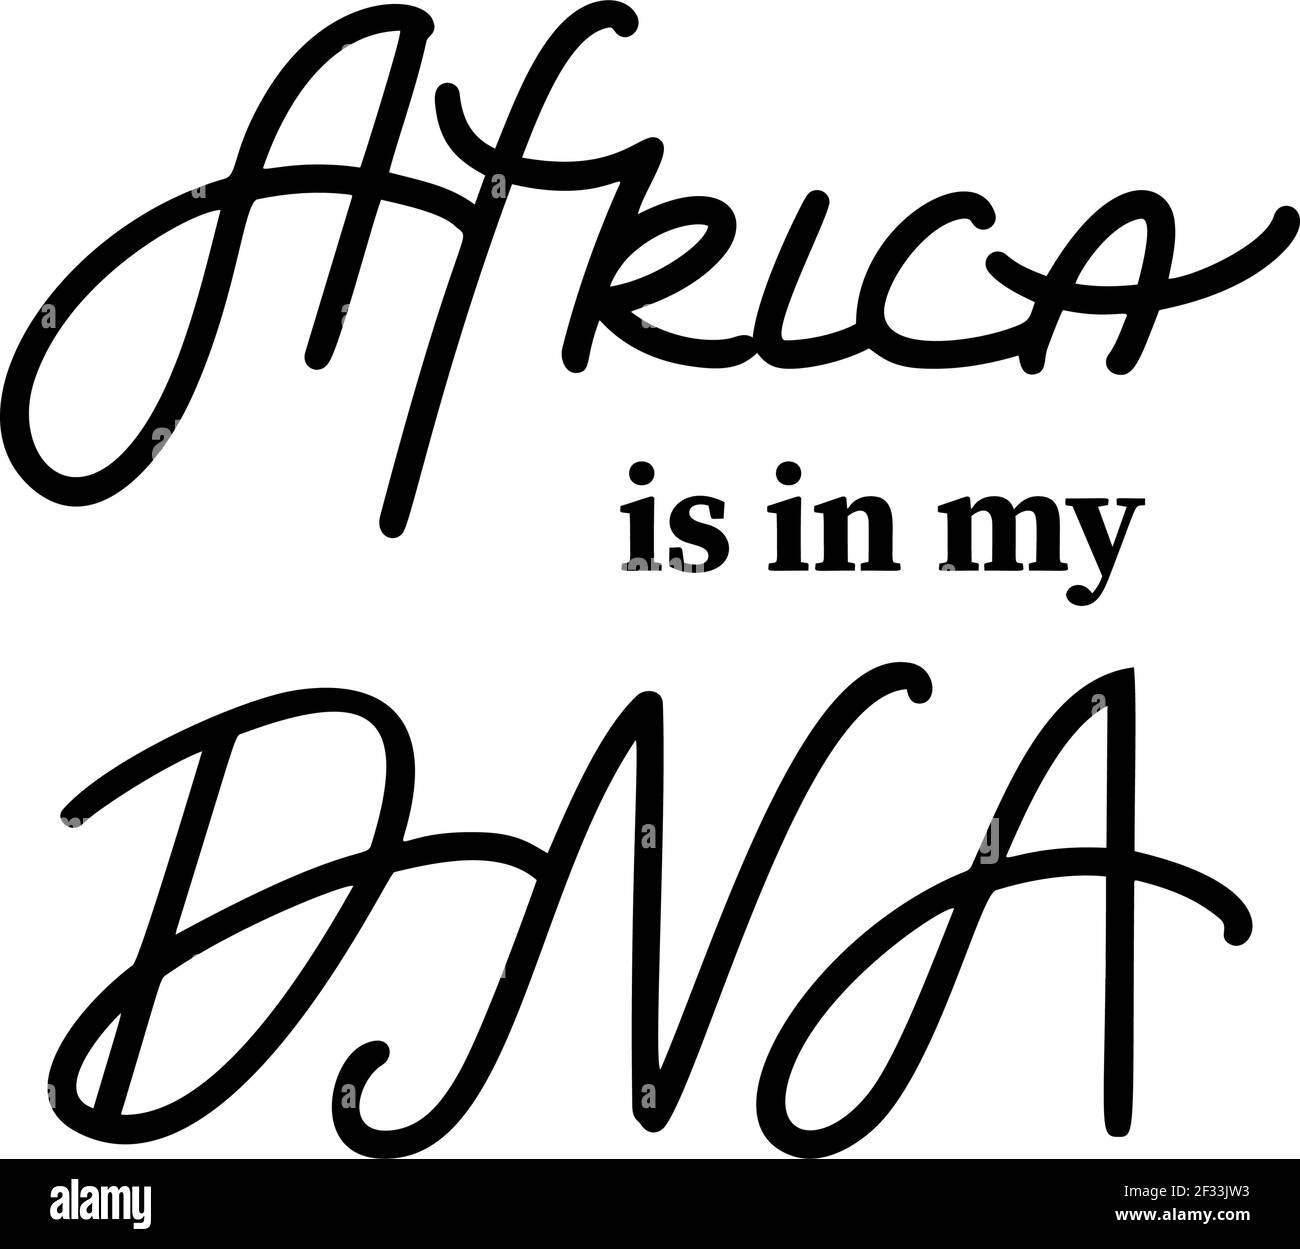 Afrika ist in meiner DNA Zitat, Juneteenth, schwarze Geschichte Monat und schwarze Leben Materie Konzepte Stock Vektor